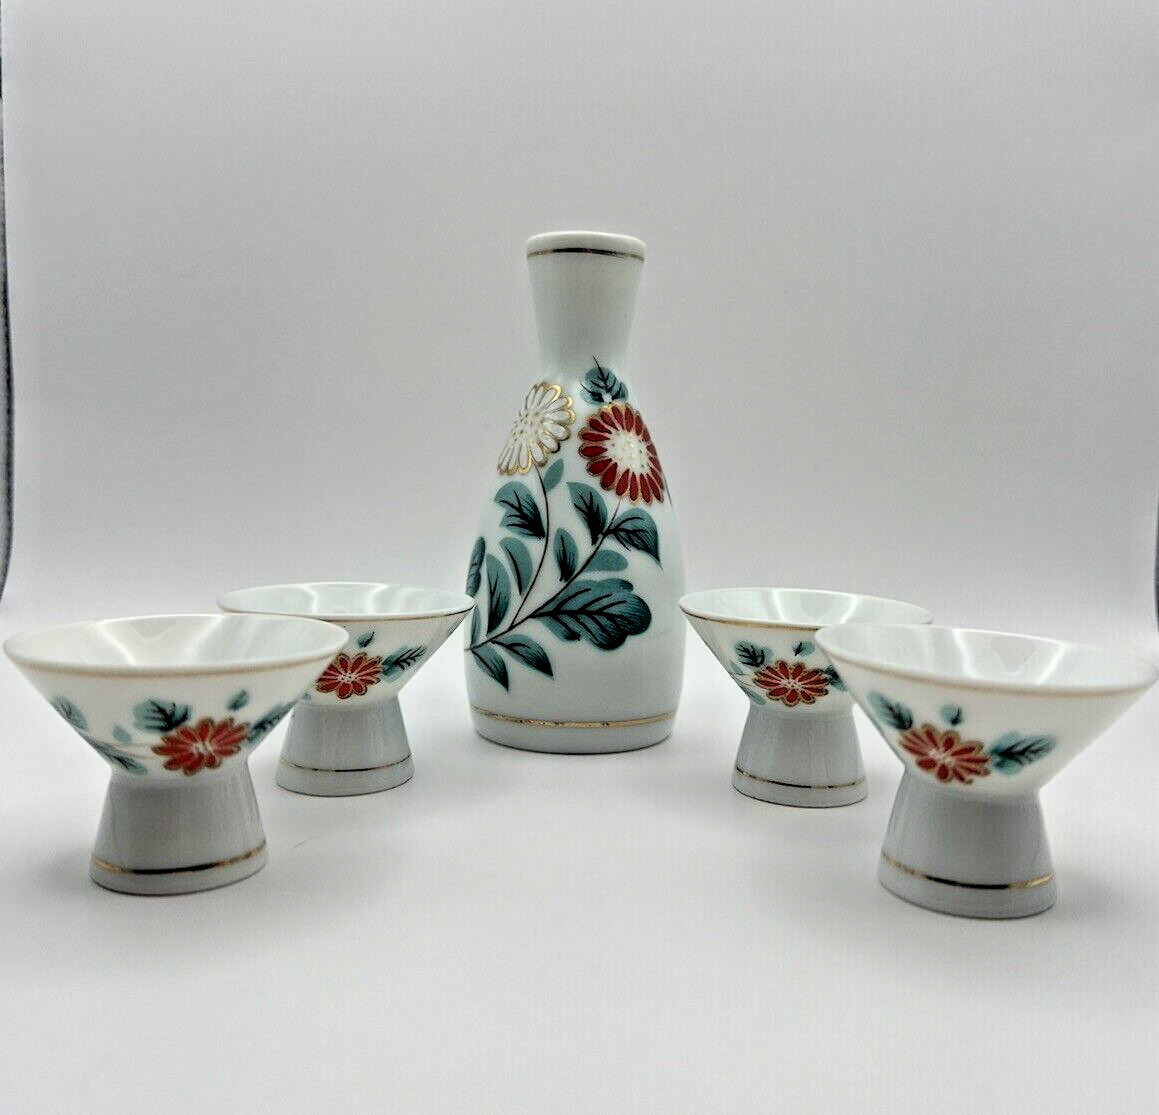 Japanese Fine Porcelain White Flower Sake Set Bottle 4 Cups Signed Vintage 5.5”